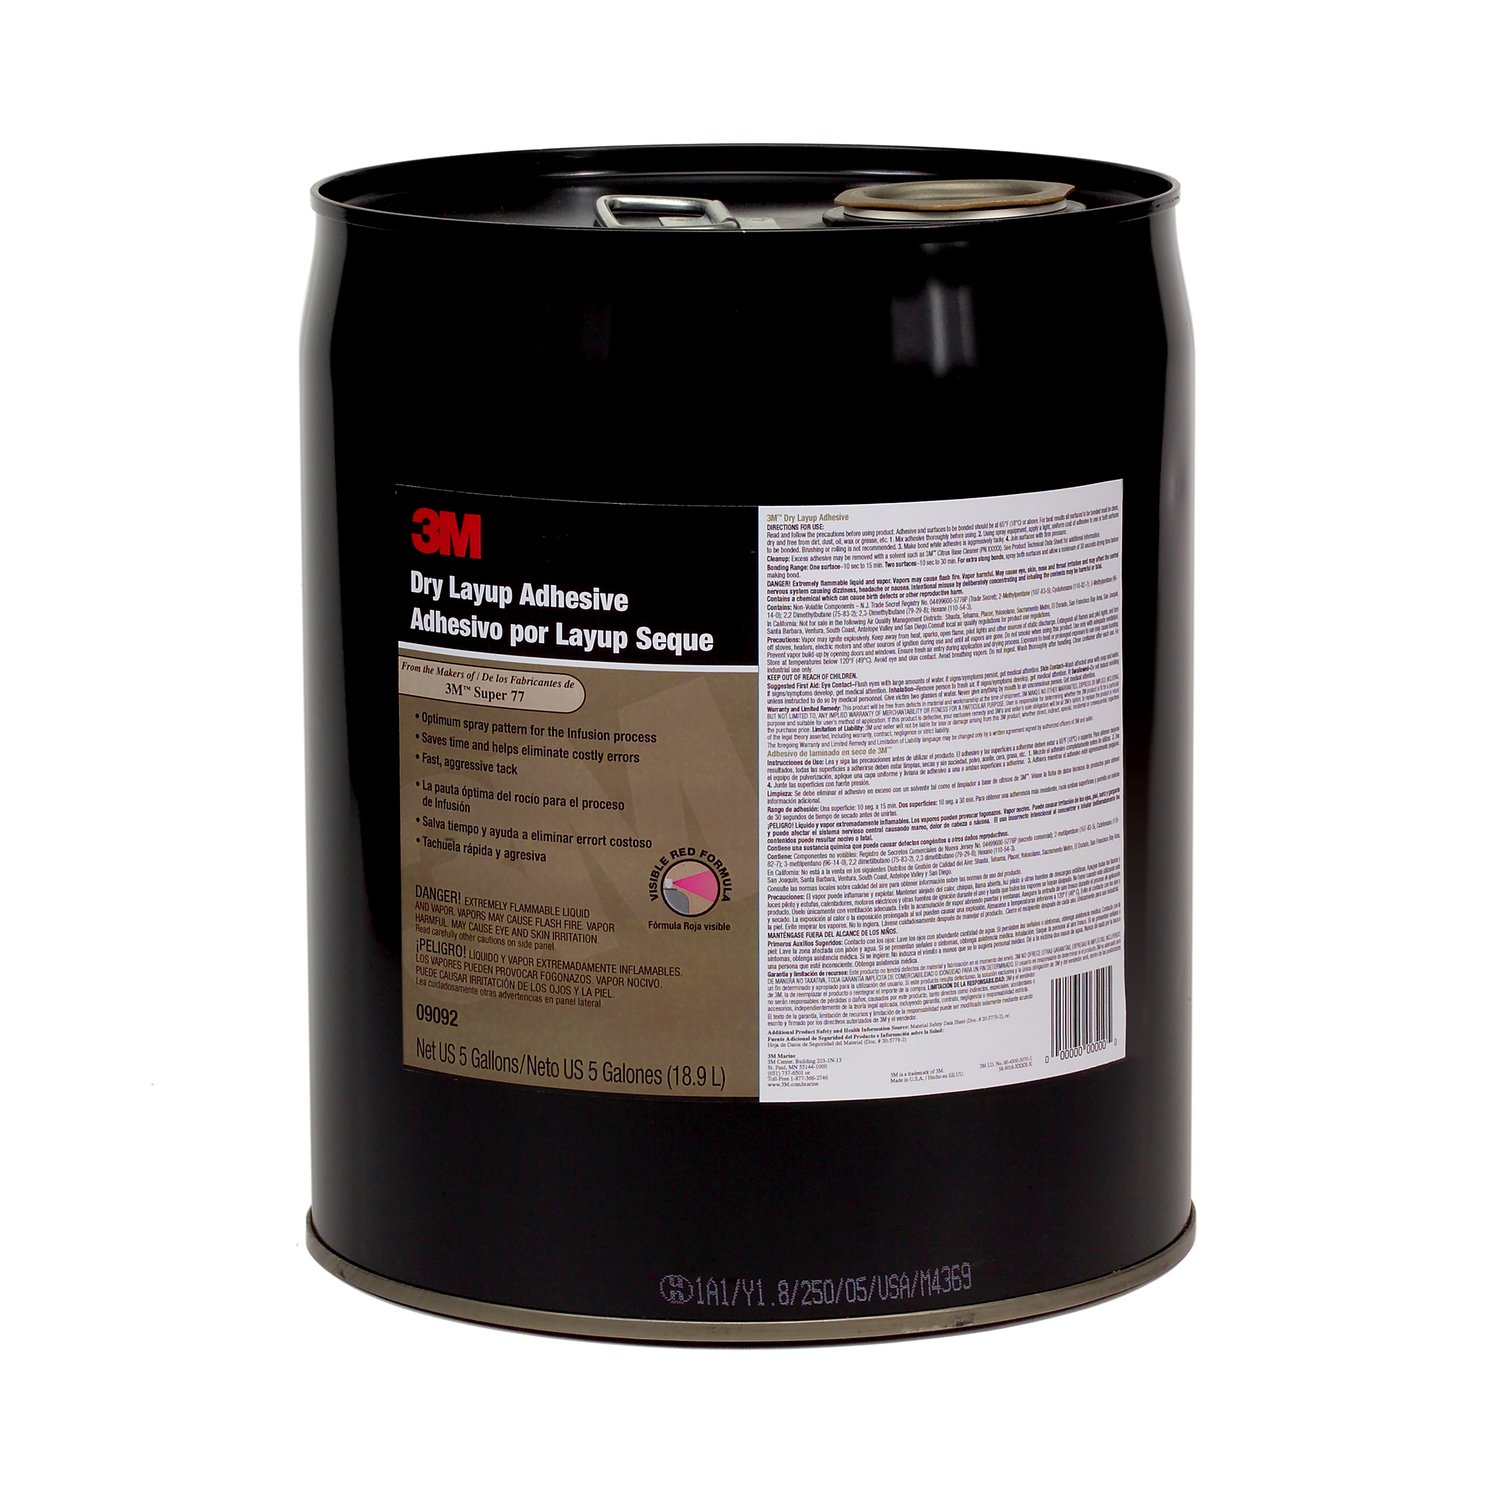 7010307745 - 3M Dry Layup Adhesive 1.0 09093, 200.6 Liter, red, 1 drum /Case